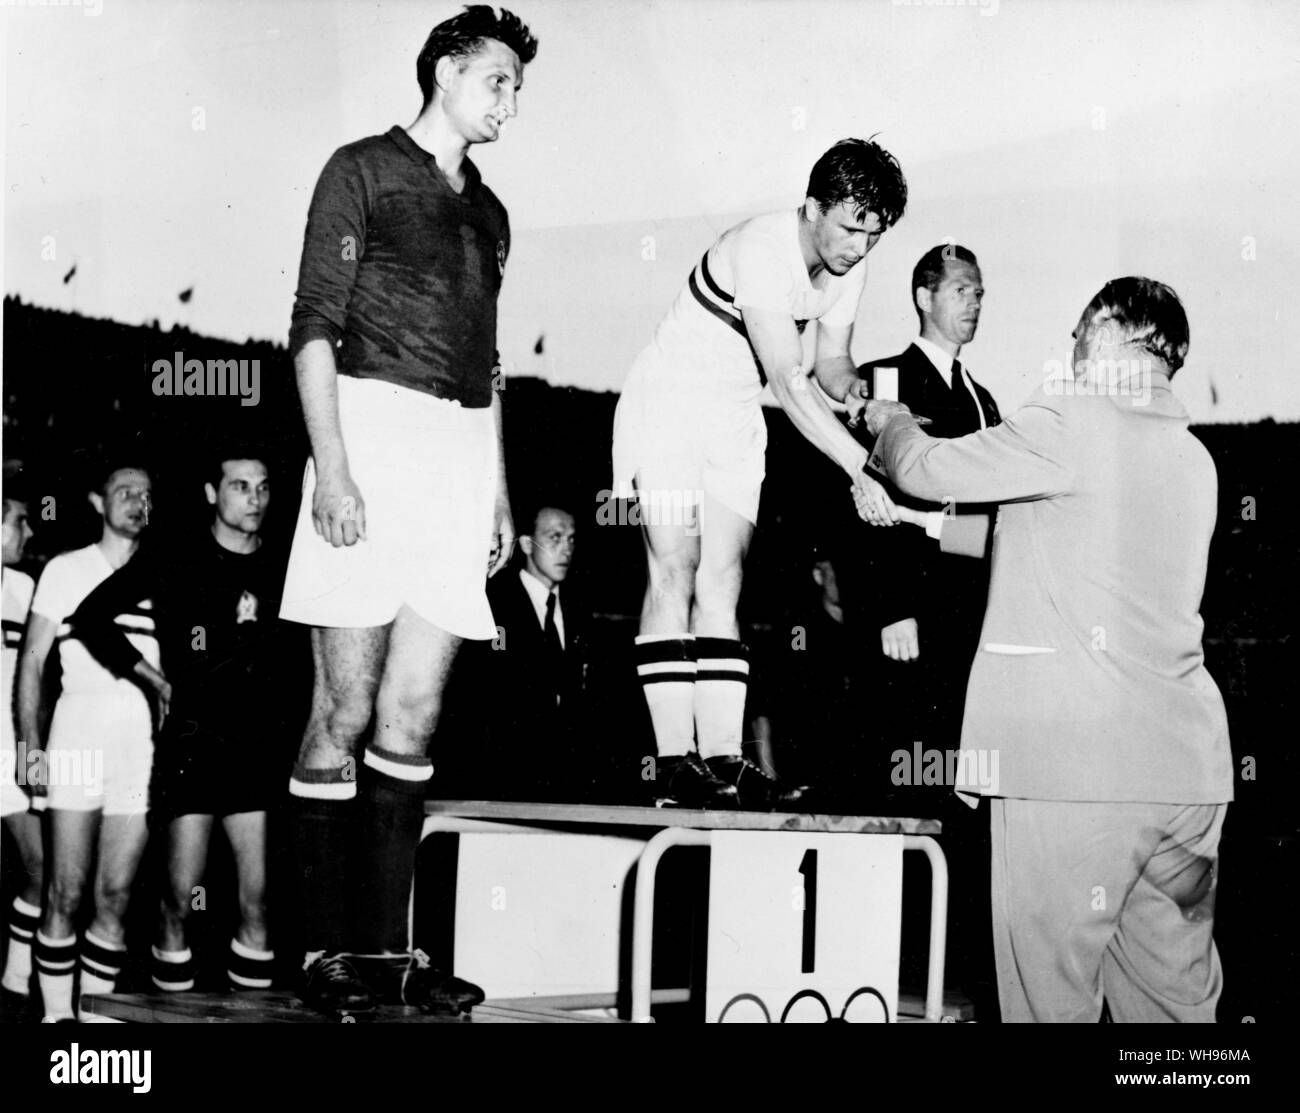 Finnland, Helsinki/Olympics, 1952: Die Olympischen Fußball-Finale wurde von Ungarn gewonnen (in weiß), der Jugoslawien von 2-0. Schweden gewann Bronze. Erich Frenckell, Präsident des Olympischen Organisationskomitees, macht die Präsentation. Stockfoto